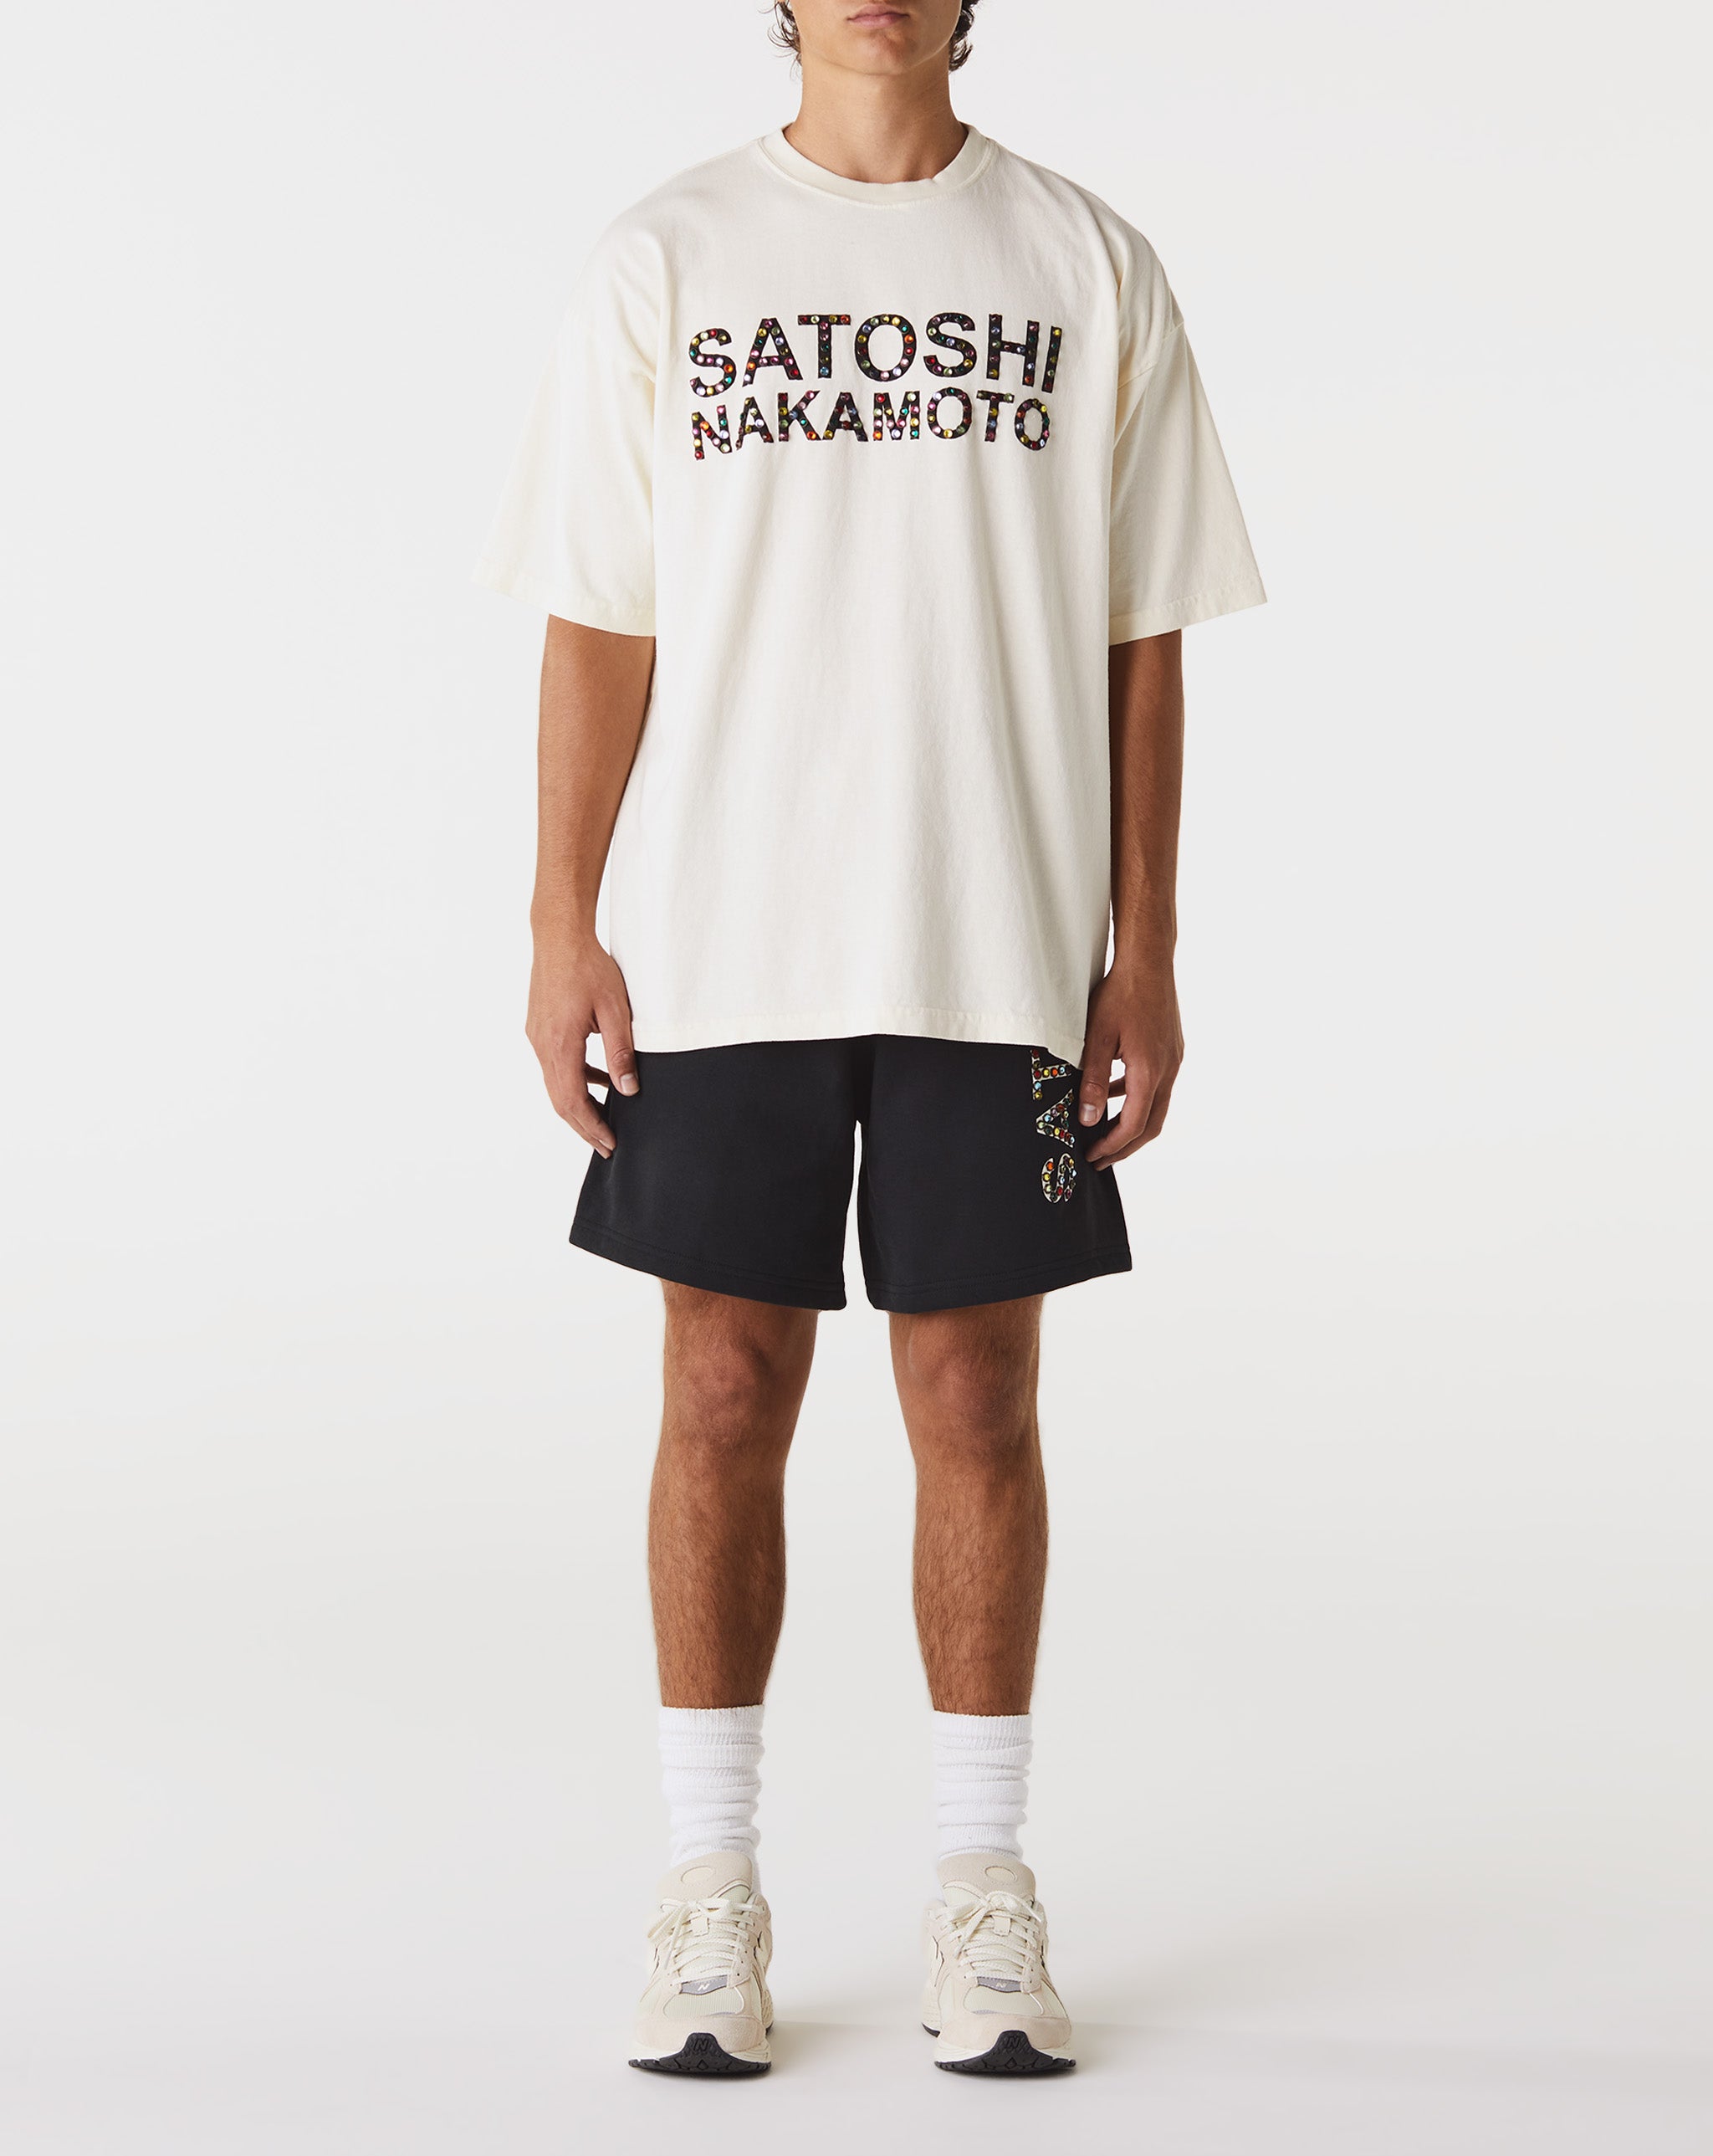 Satoshi Nakamoto Studded Logo T-Shirt  - Cheap Urlfreeze Jordan outlet